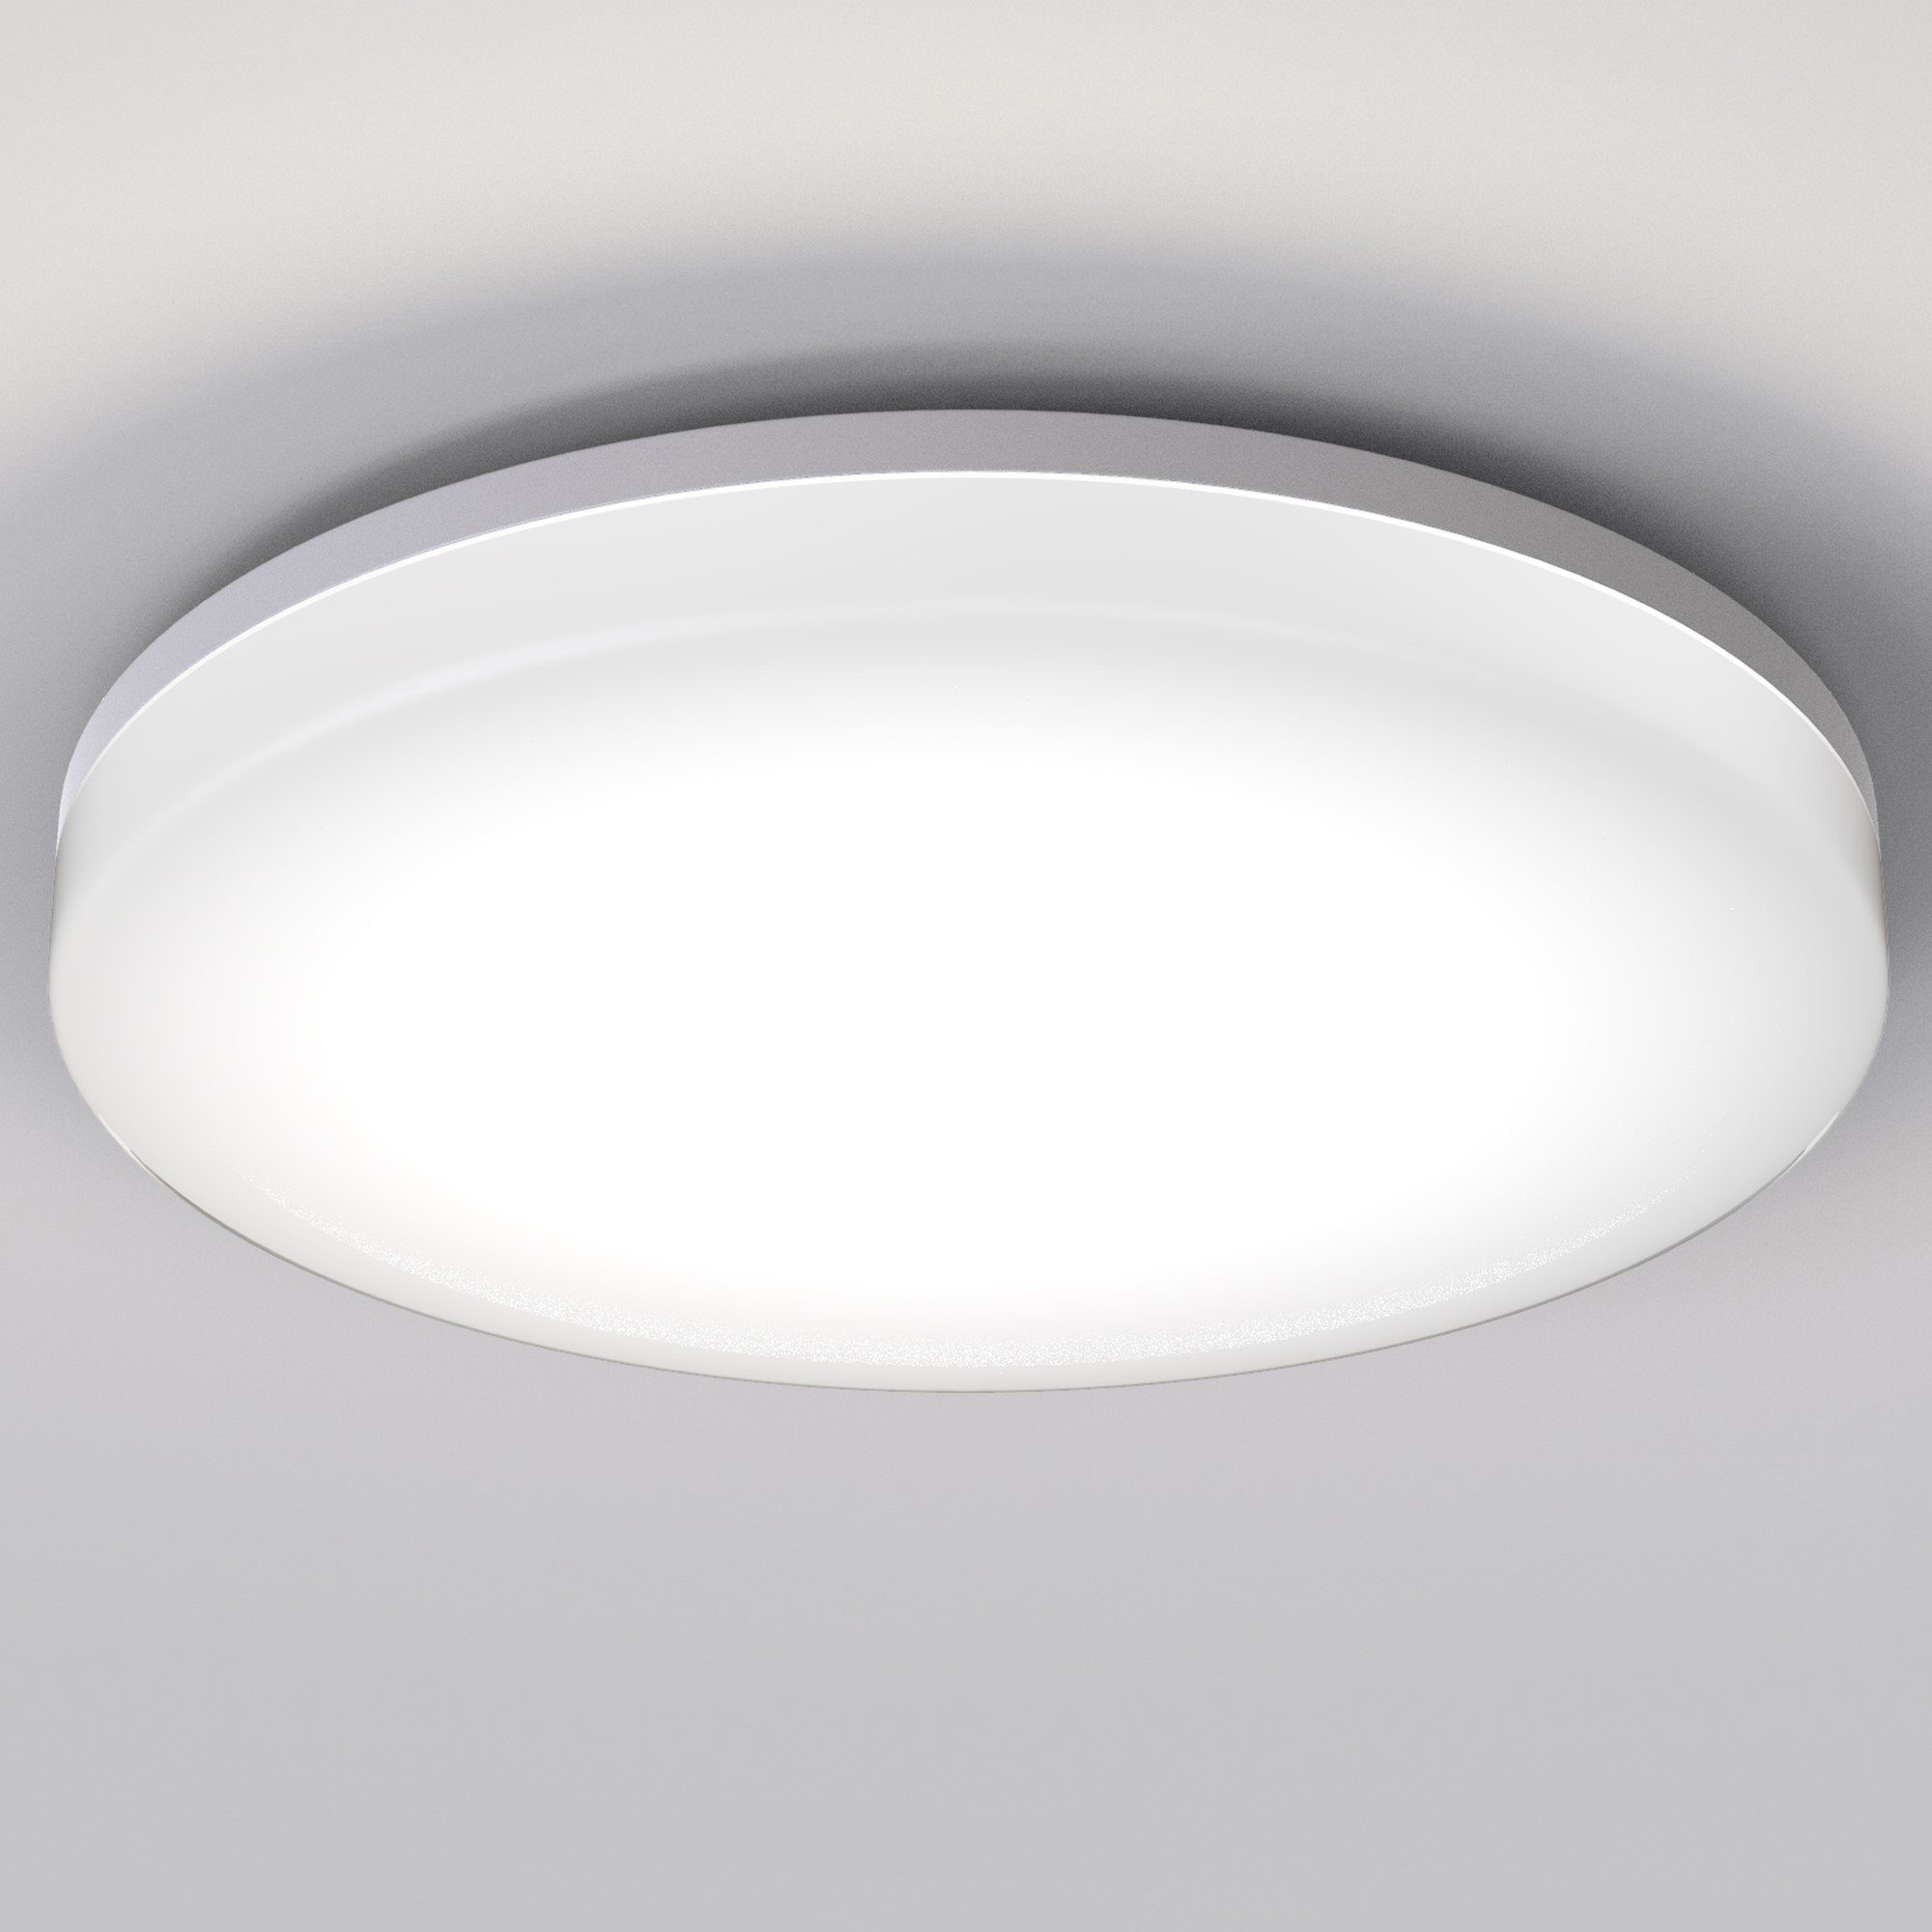 LED Deckenleuchte Design Lampe Deckenlampe Badezimmer Bad 12 Watt IP44 warmweiß 